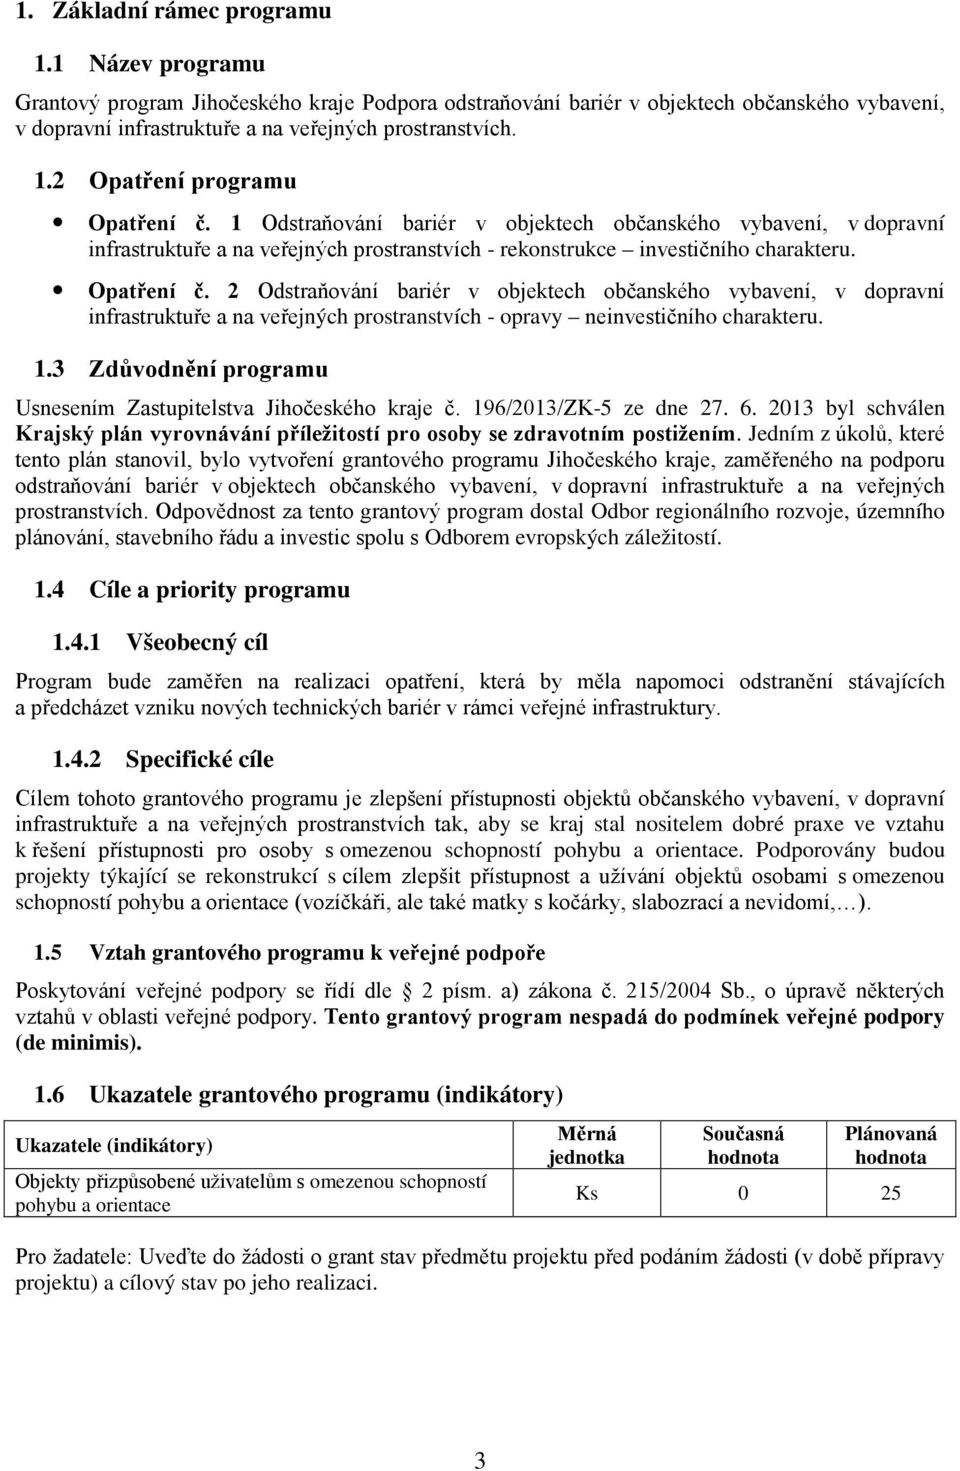 1.3 Zdůvodnění programu Usnesením Zastupitelstva Jihočeského kraje č. 196/2013/ZK-5 ze dne 27. 6. 2013 byl schválen Krajský plán vyrovnávání příležitostí pro osoby se zdravotním postižením.